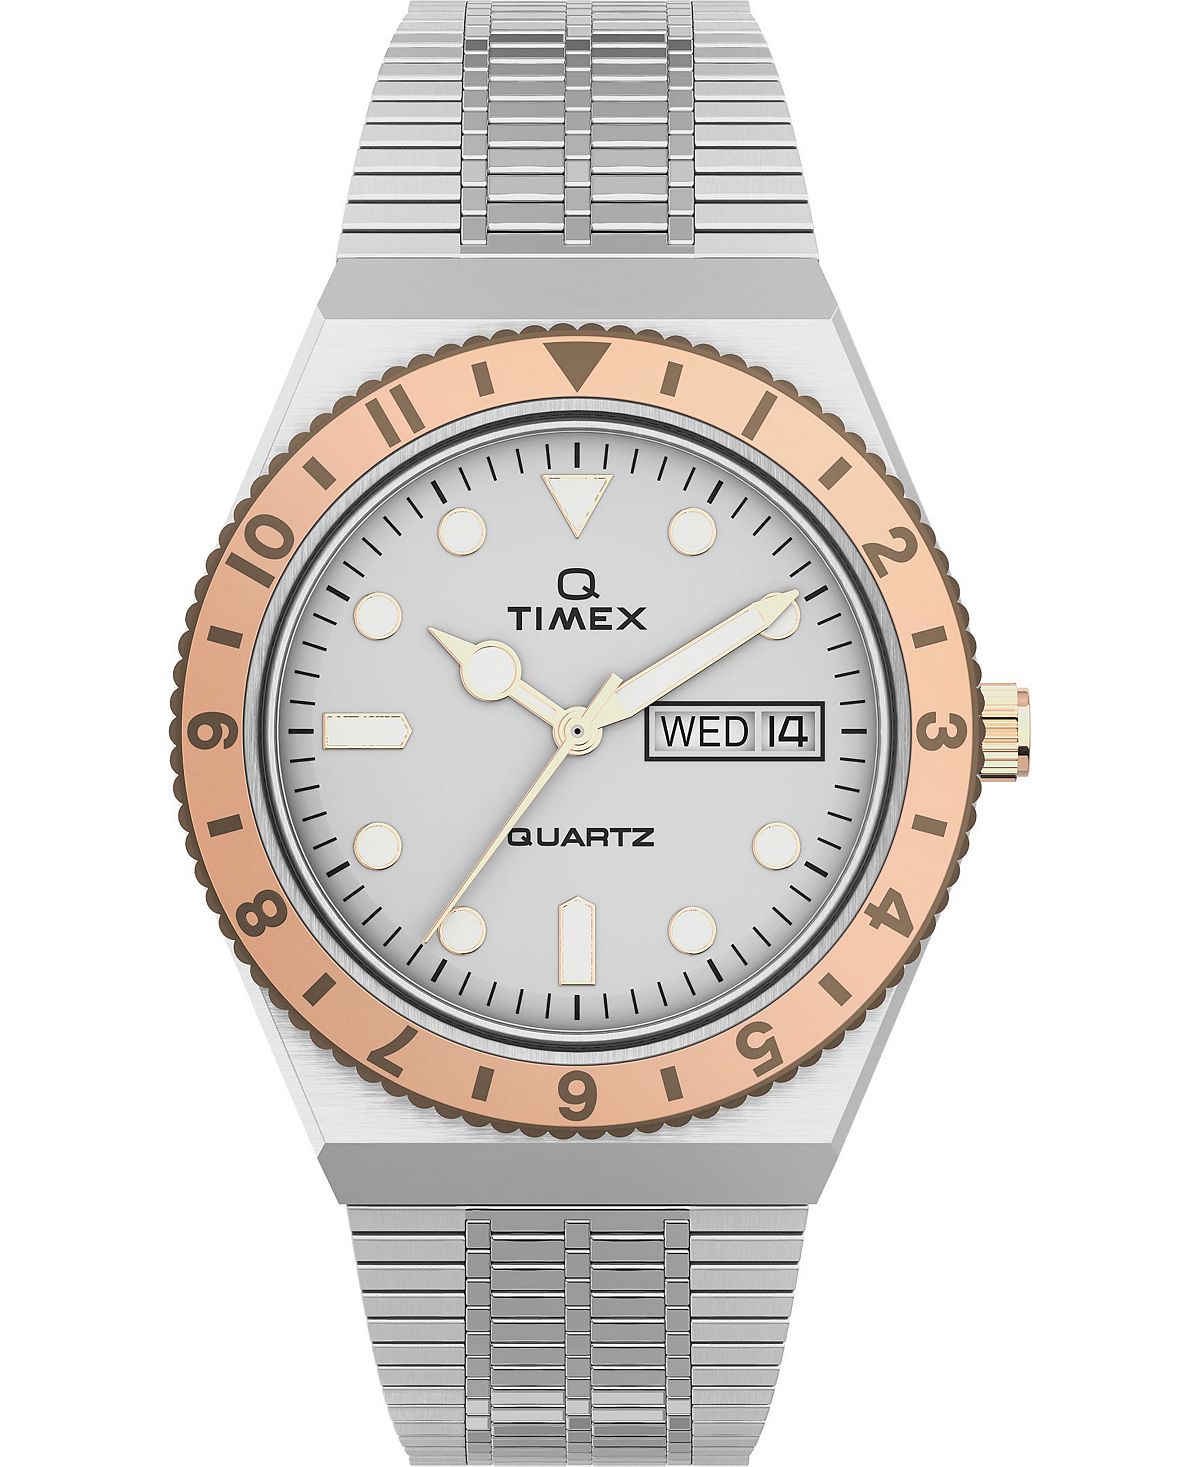 Женские часы Q серебристого цвета с браслетом из нержавеющей стали, 36 мм Timex женские часы q серебристого цвета с браслетом из нержавеющей стали 36 мм timex